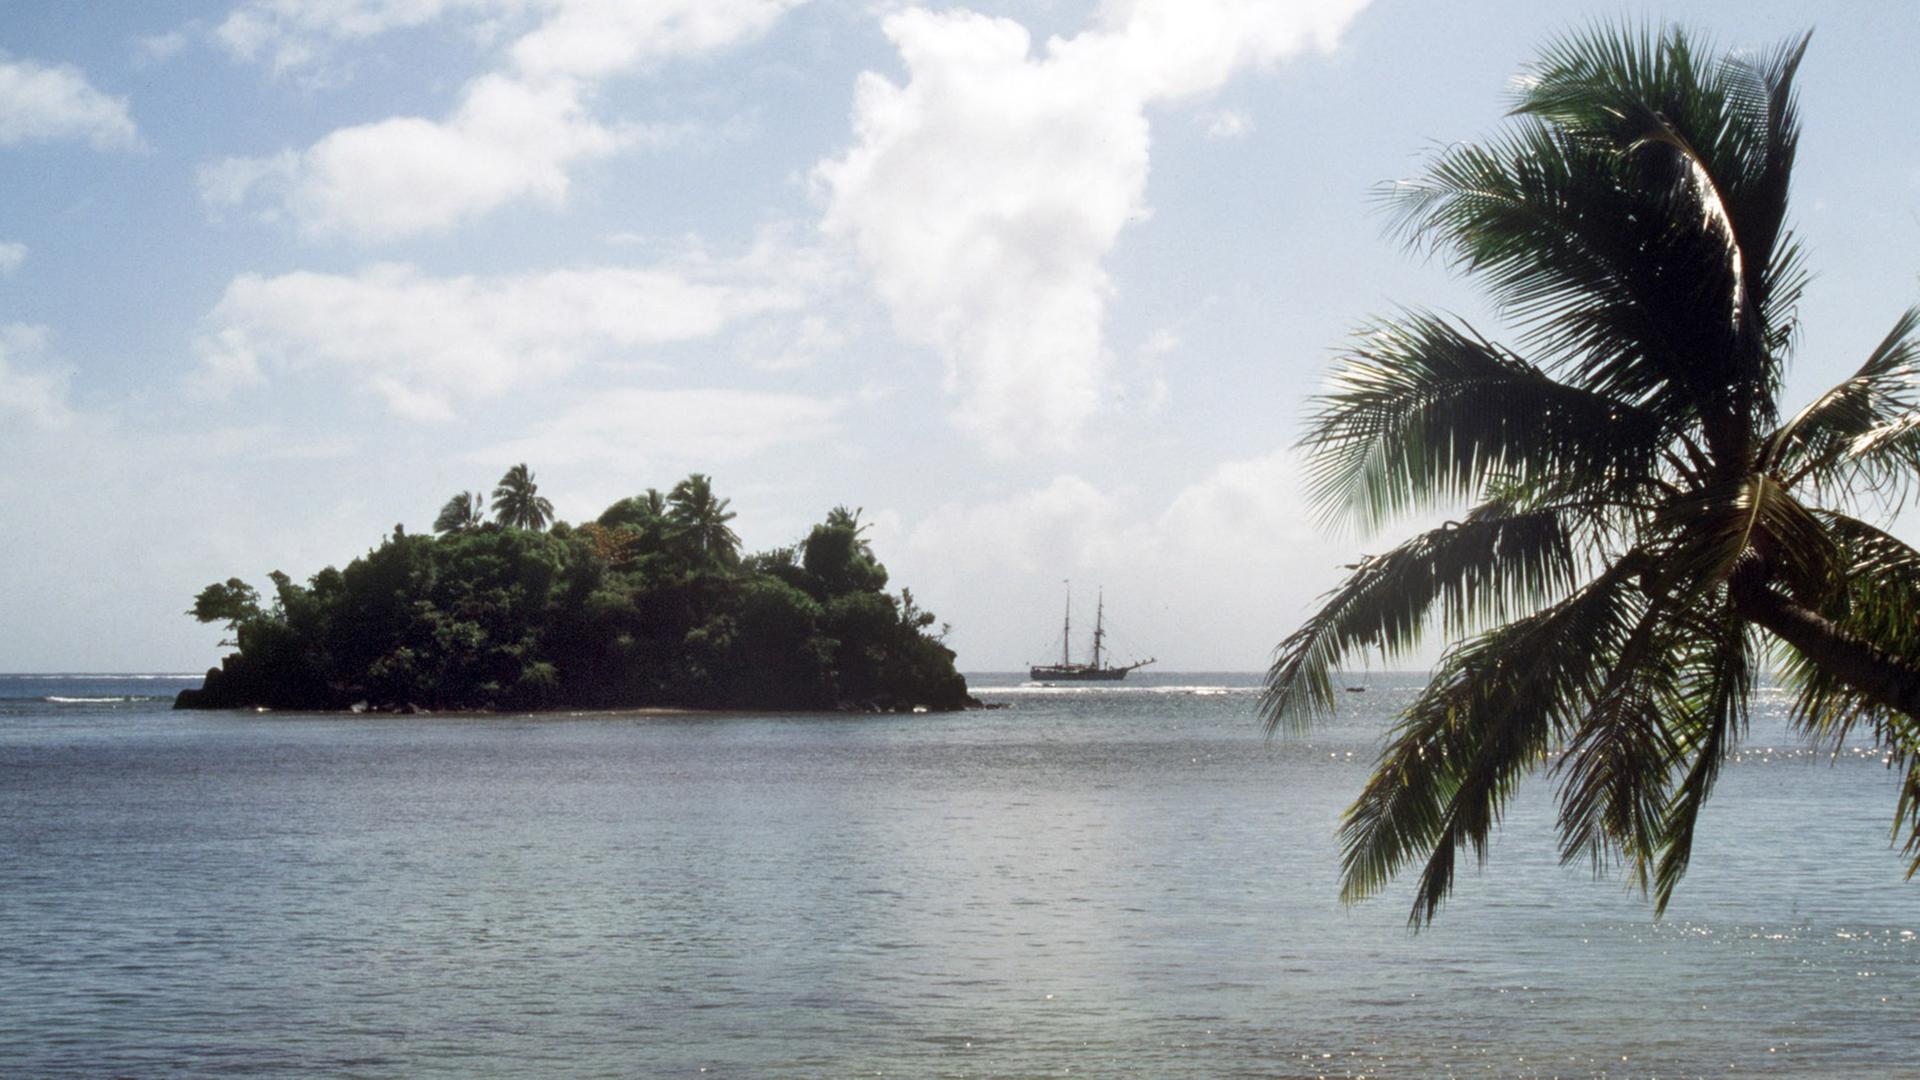 Palmenidylle auf Samoa mit Blick auf eine vorgelagerte Insel